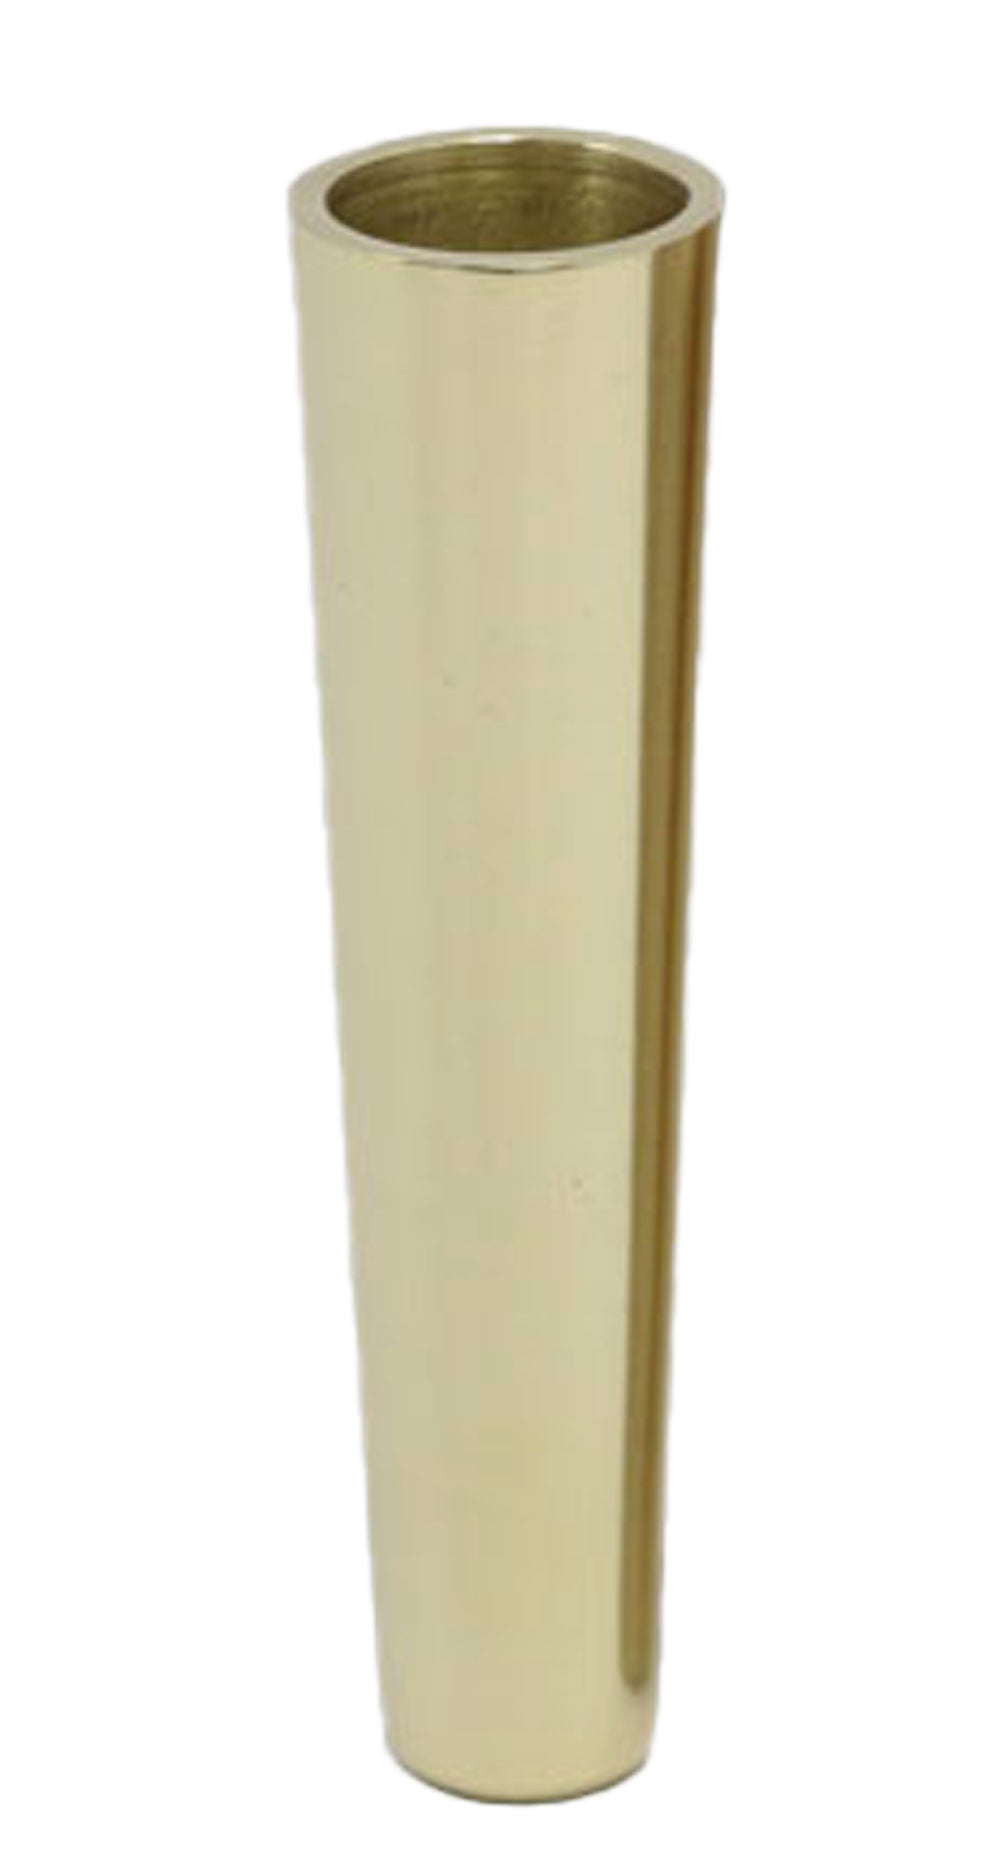 Taj Tall Brass Leg Cup